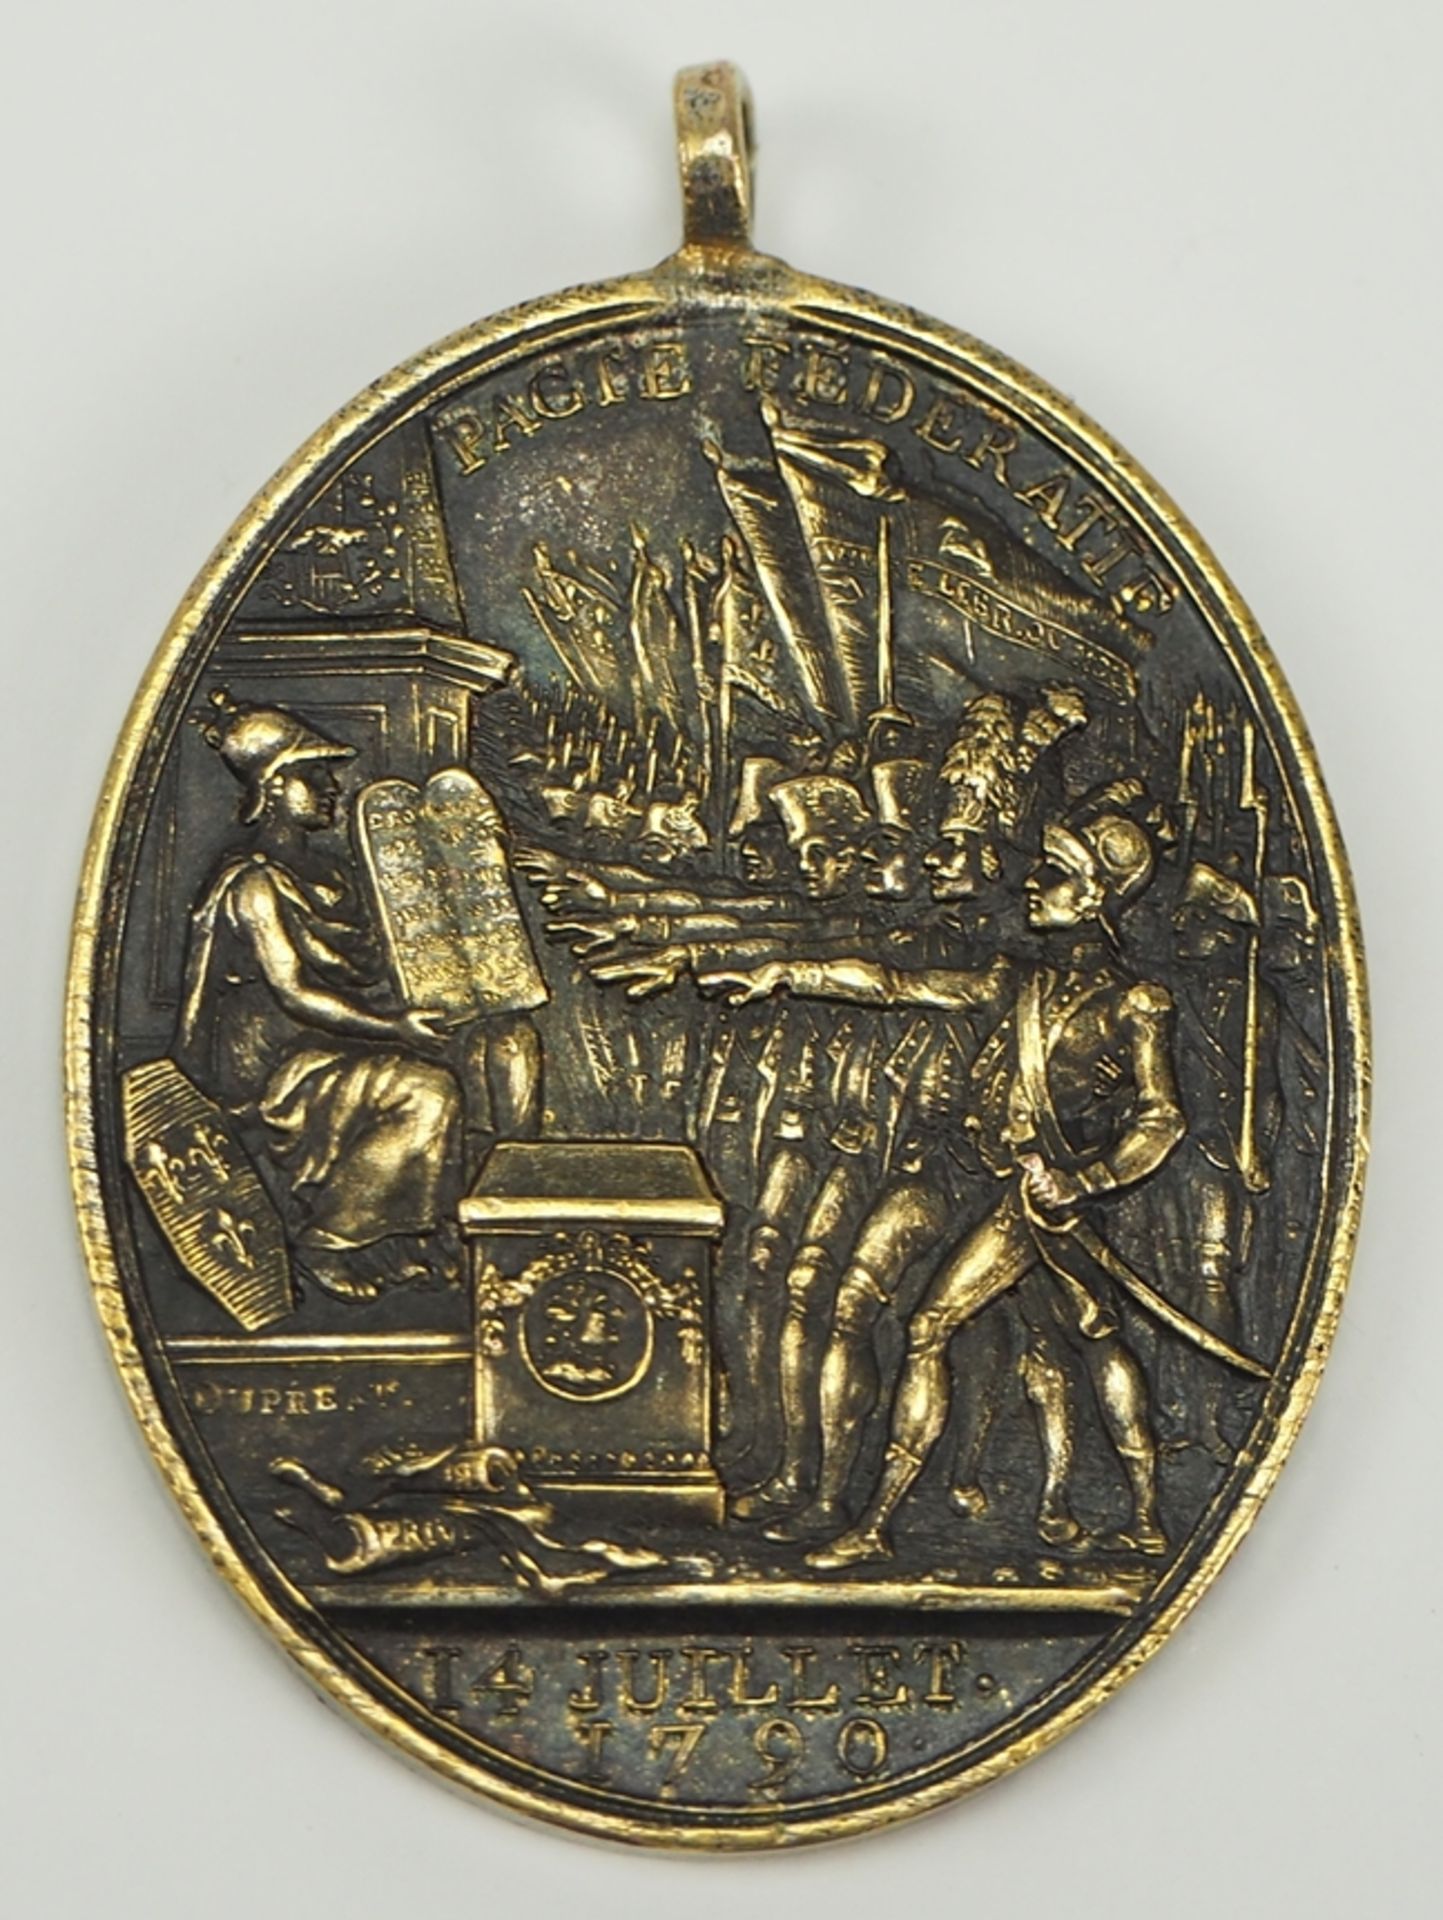 Frankreich: Medaille zur Erinnerung an das Förderationsfest auf dem Marsfeld für die Marine, 1790.